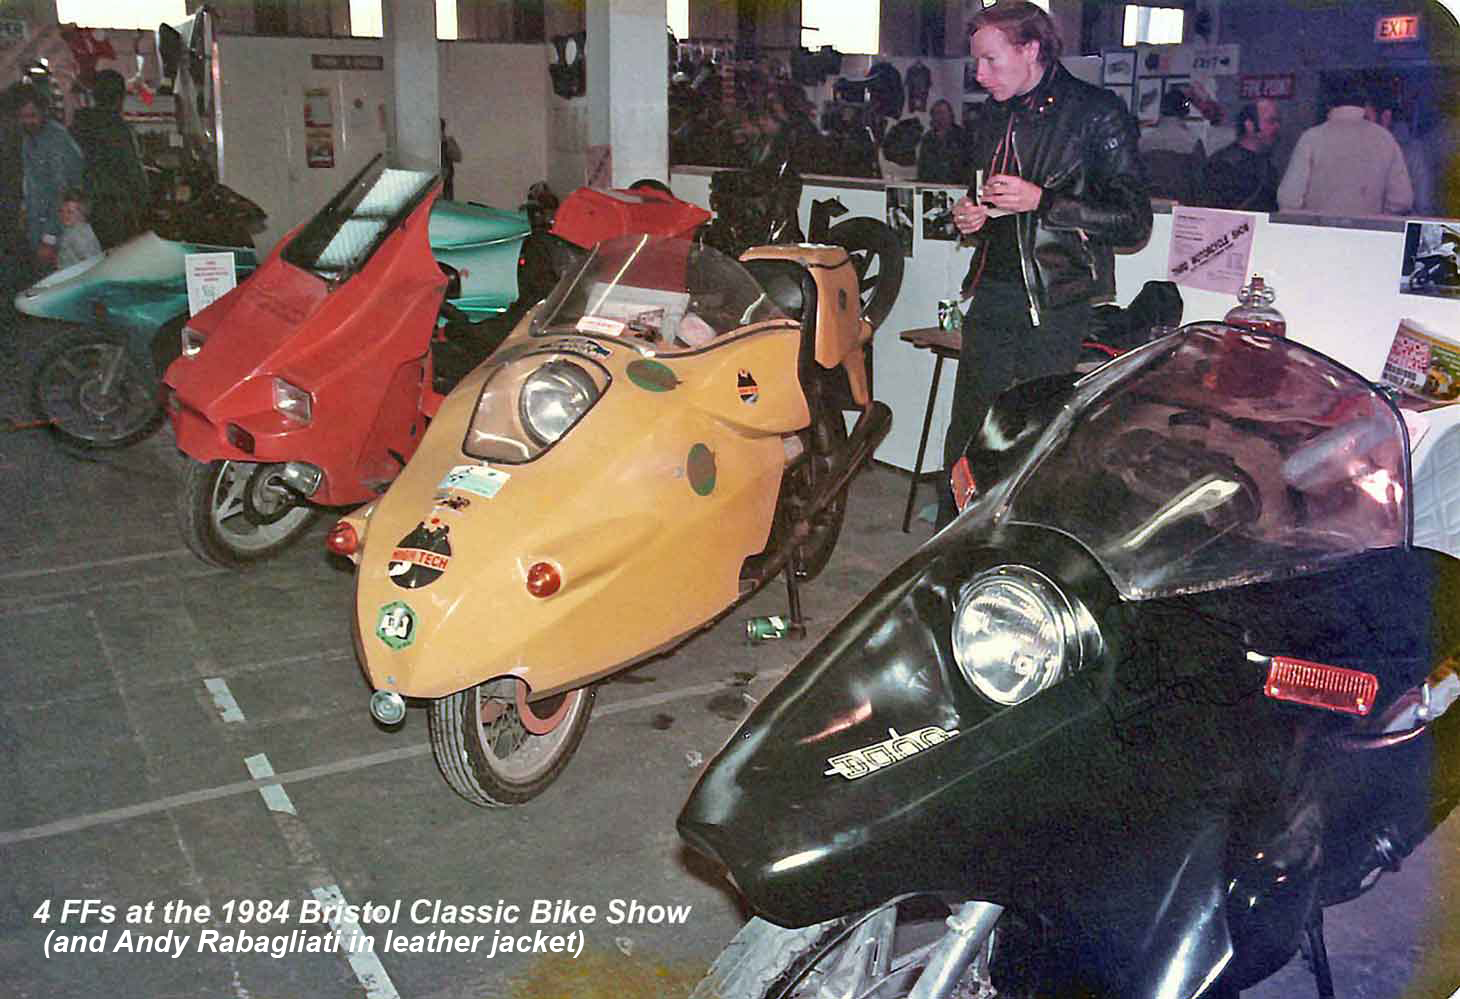 4 FFs at Bristol Classic Bike Show (1984)